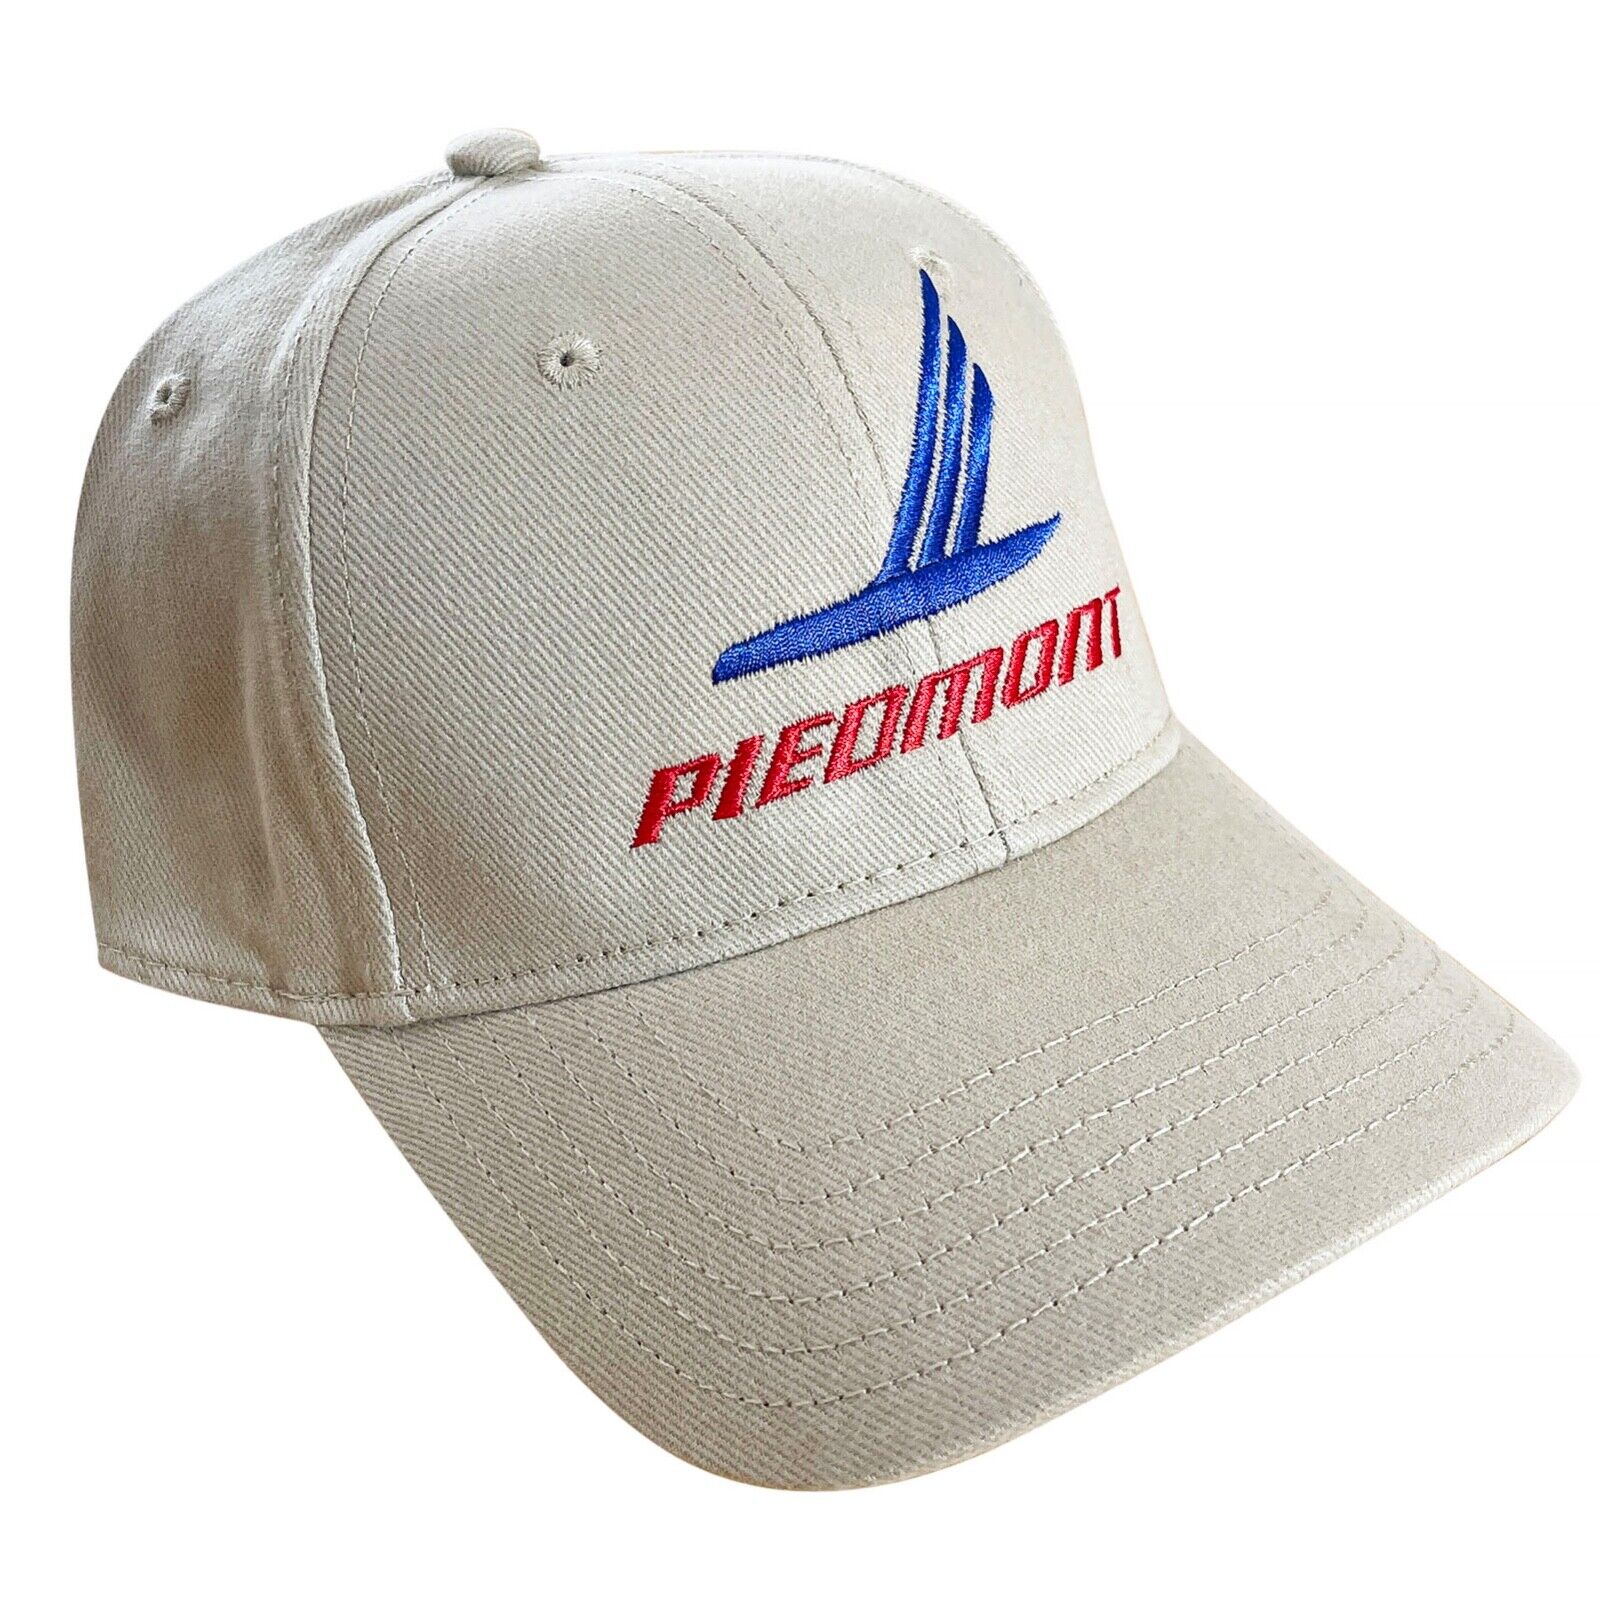 Classic PIEDMONT AIRLINES CREW CAP Brand New, Unworn, Collectible